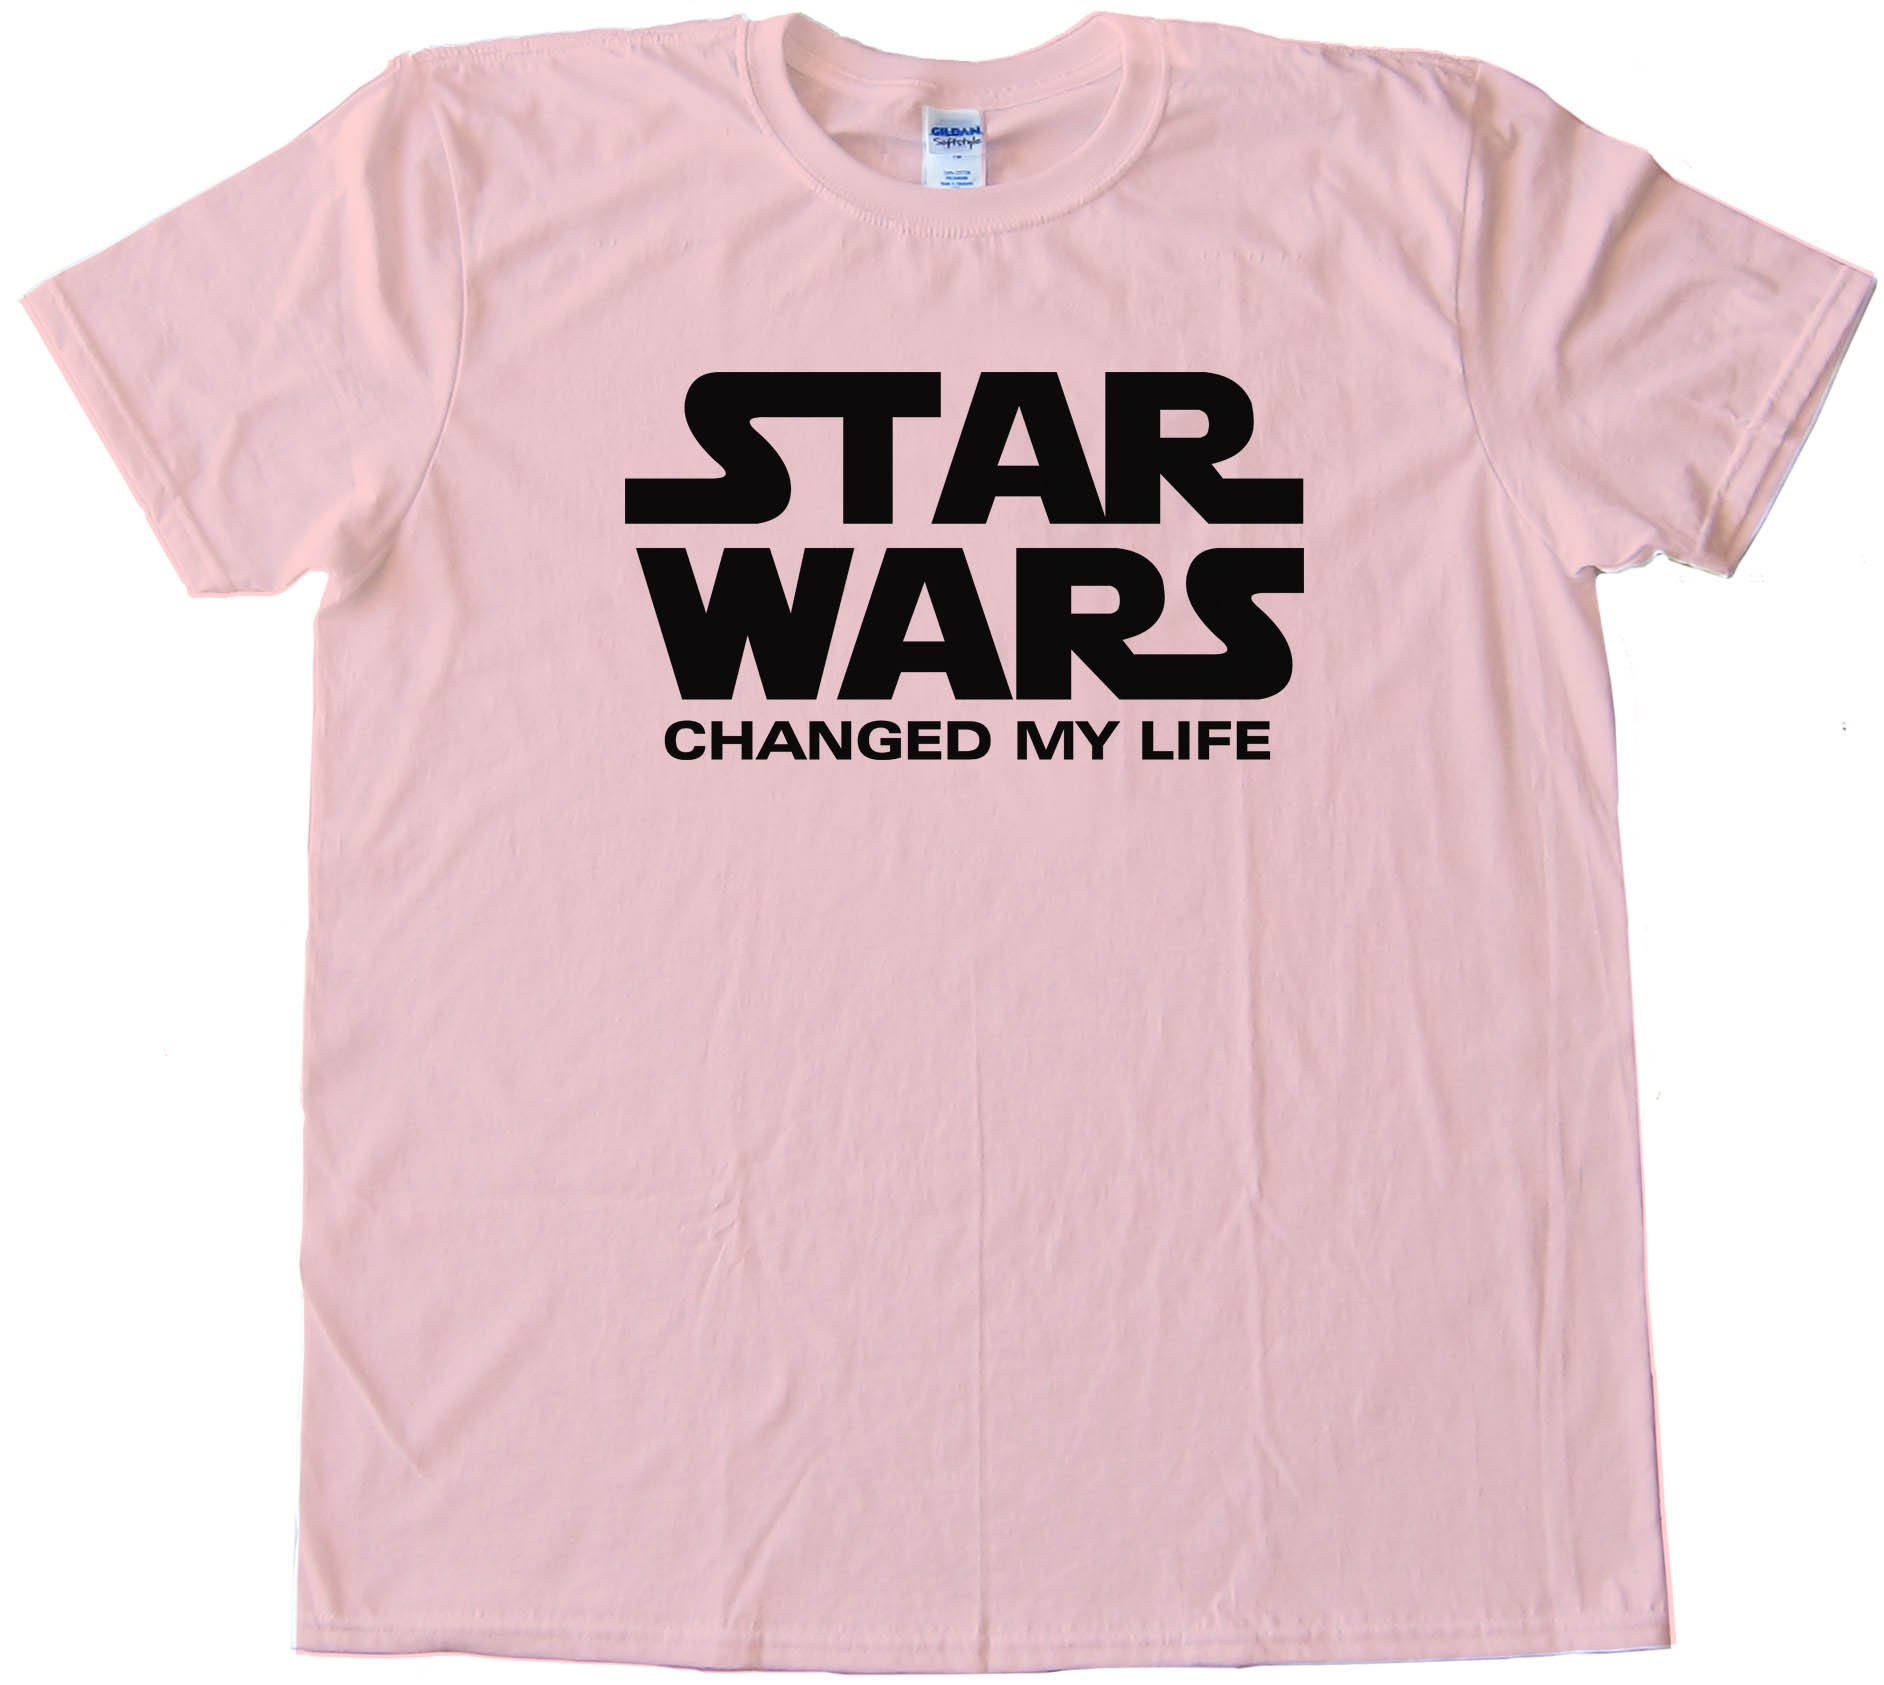 Star Wars Changed My Life - Tee Shirt